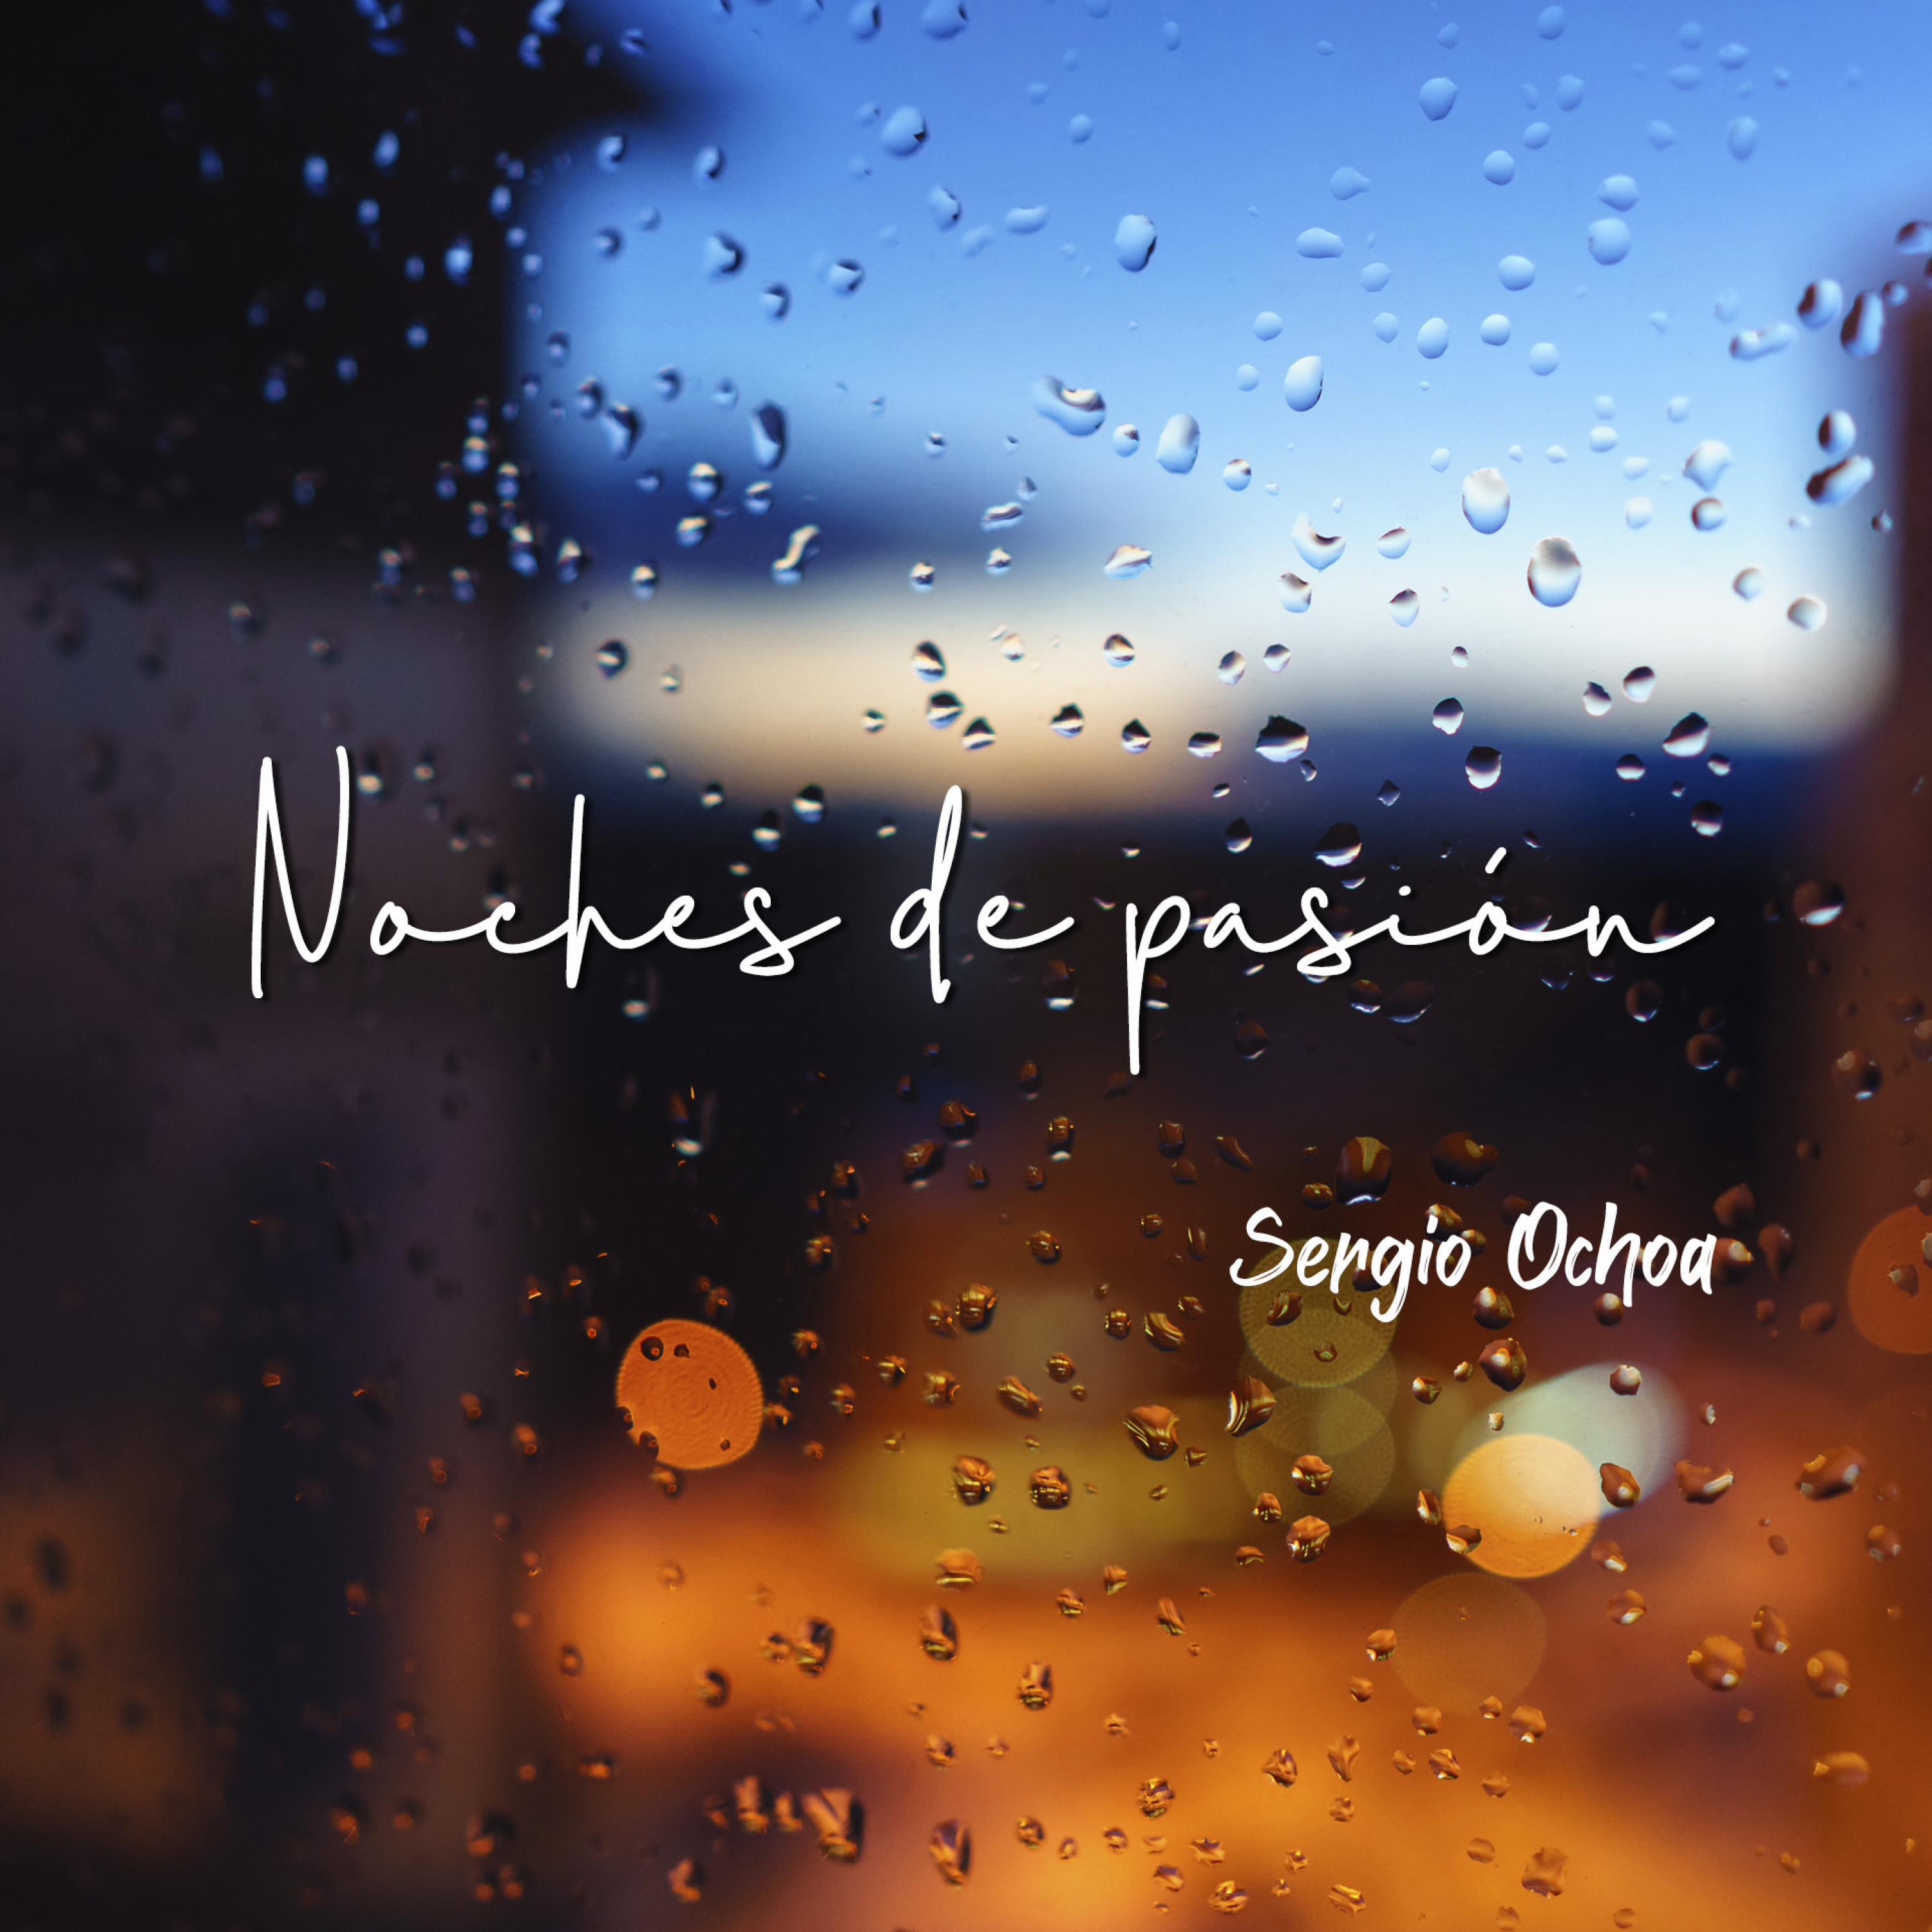 Sergio Ochoa - Noches de pasión